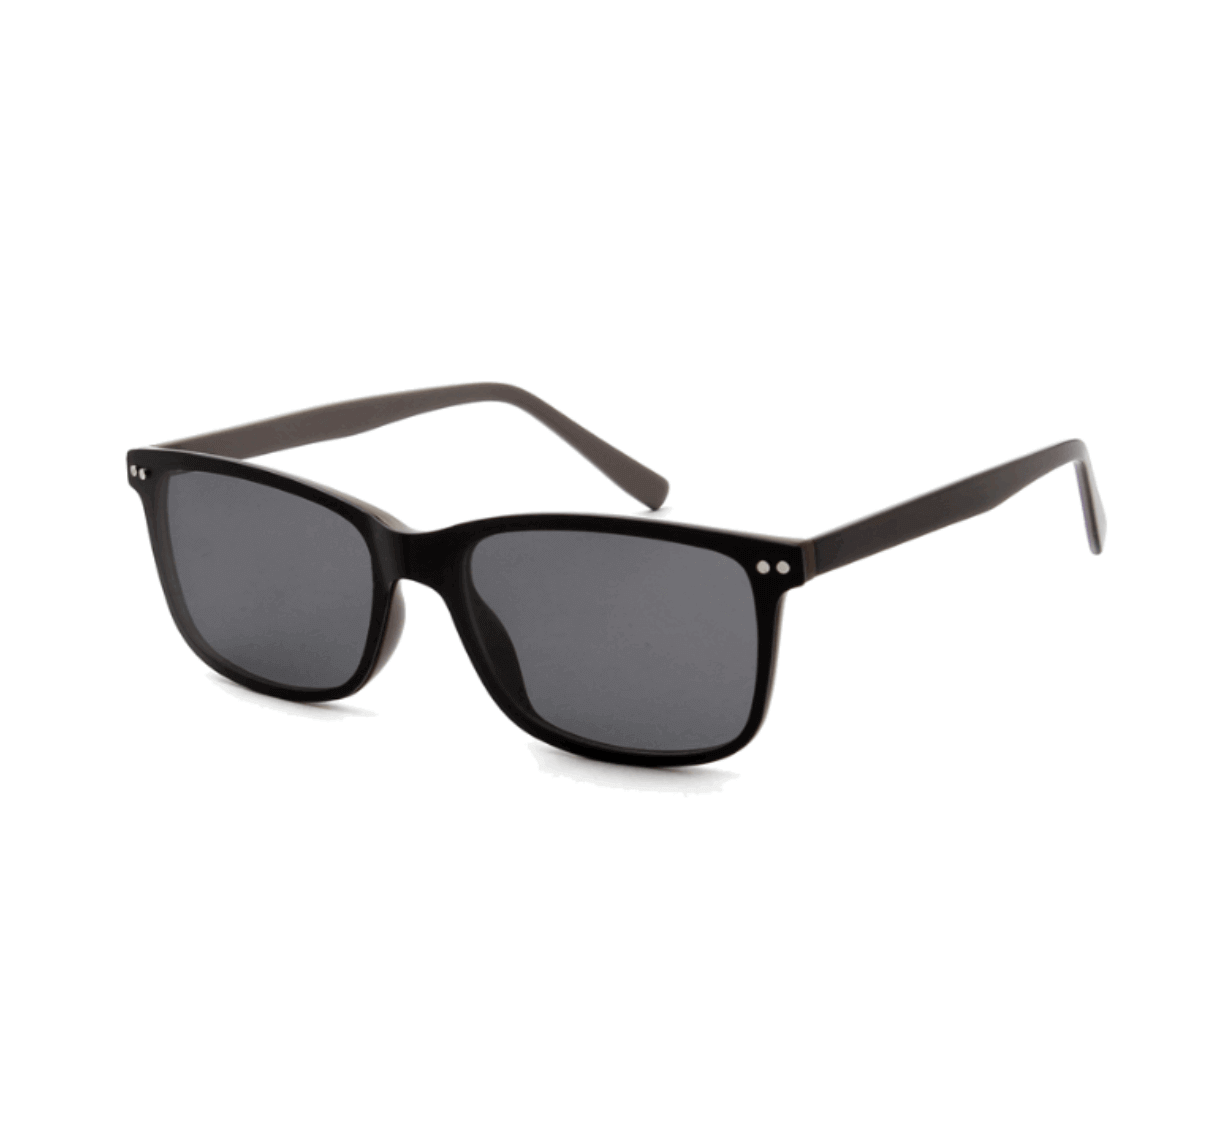 Custom Polarized Sunglasses, unisex Square Sunglasses, custom logo polarized sunglasses, design your own sunglasses with logo, custom sunglasses manufacturers China, eyeglasses supplier